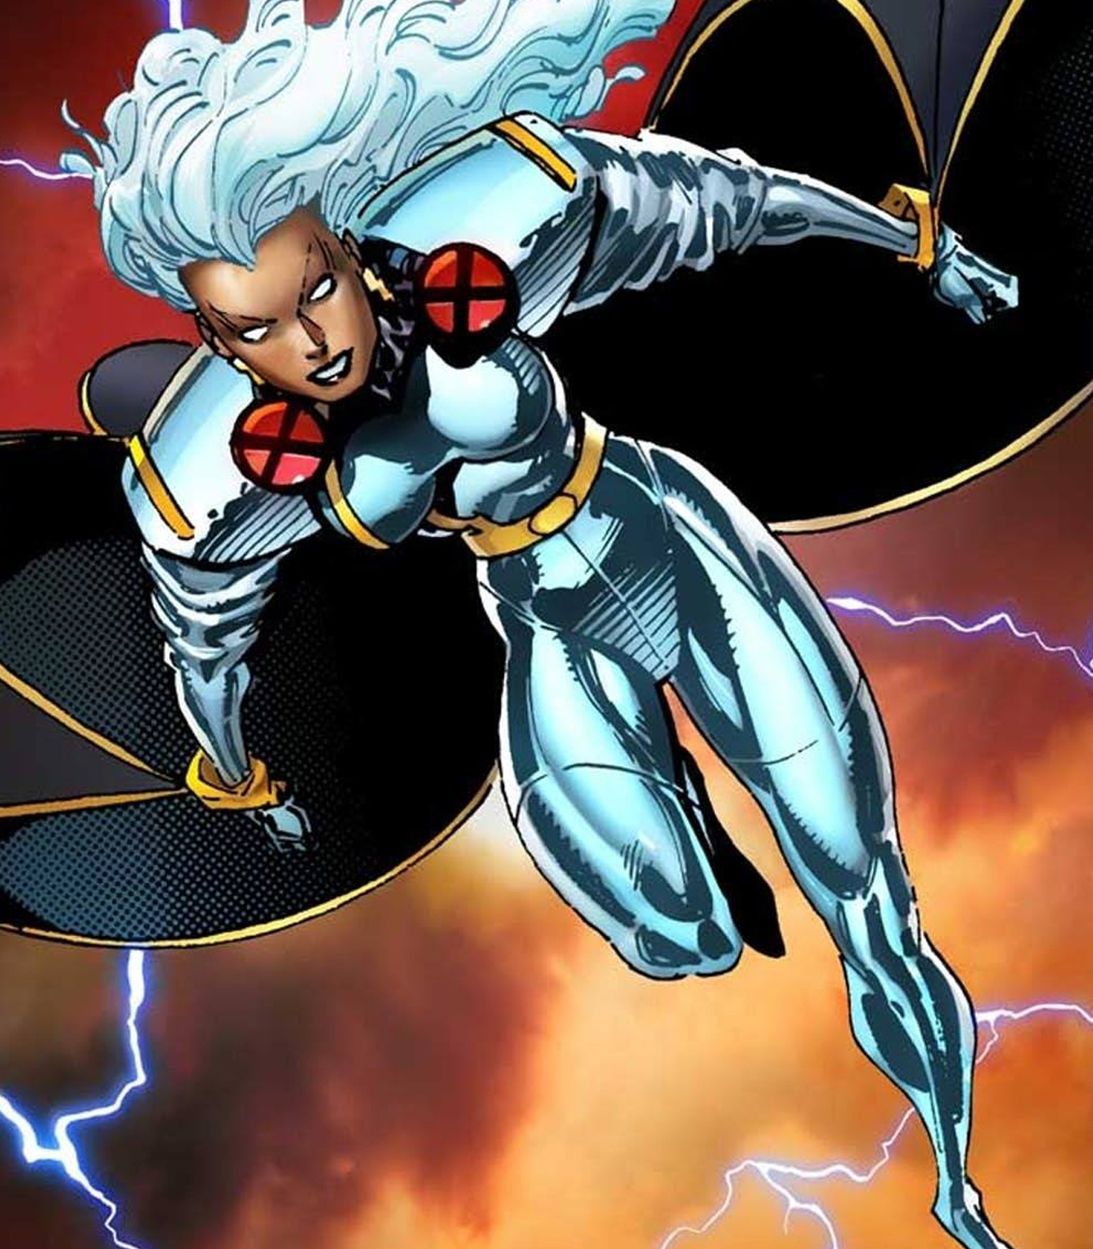 Storm in X-Men by Jim Lee